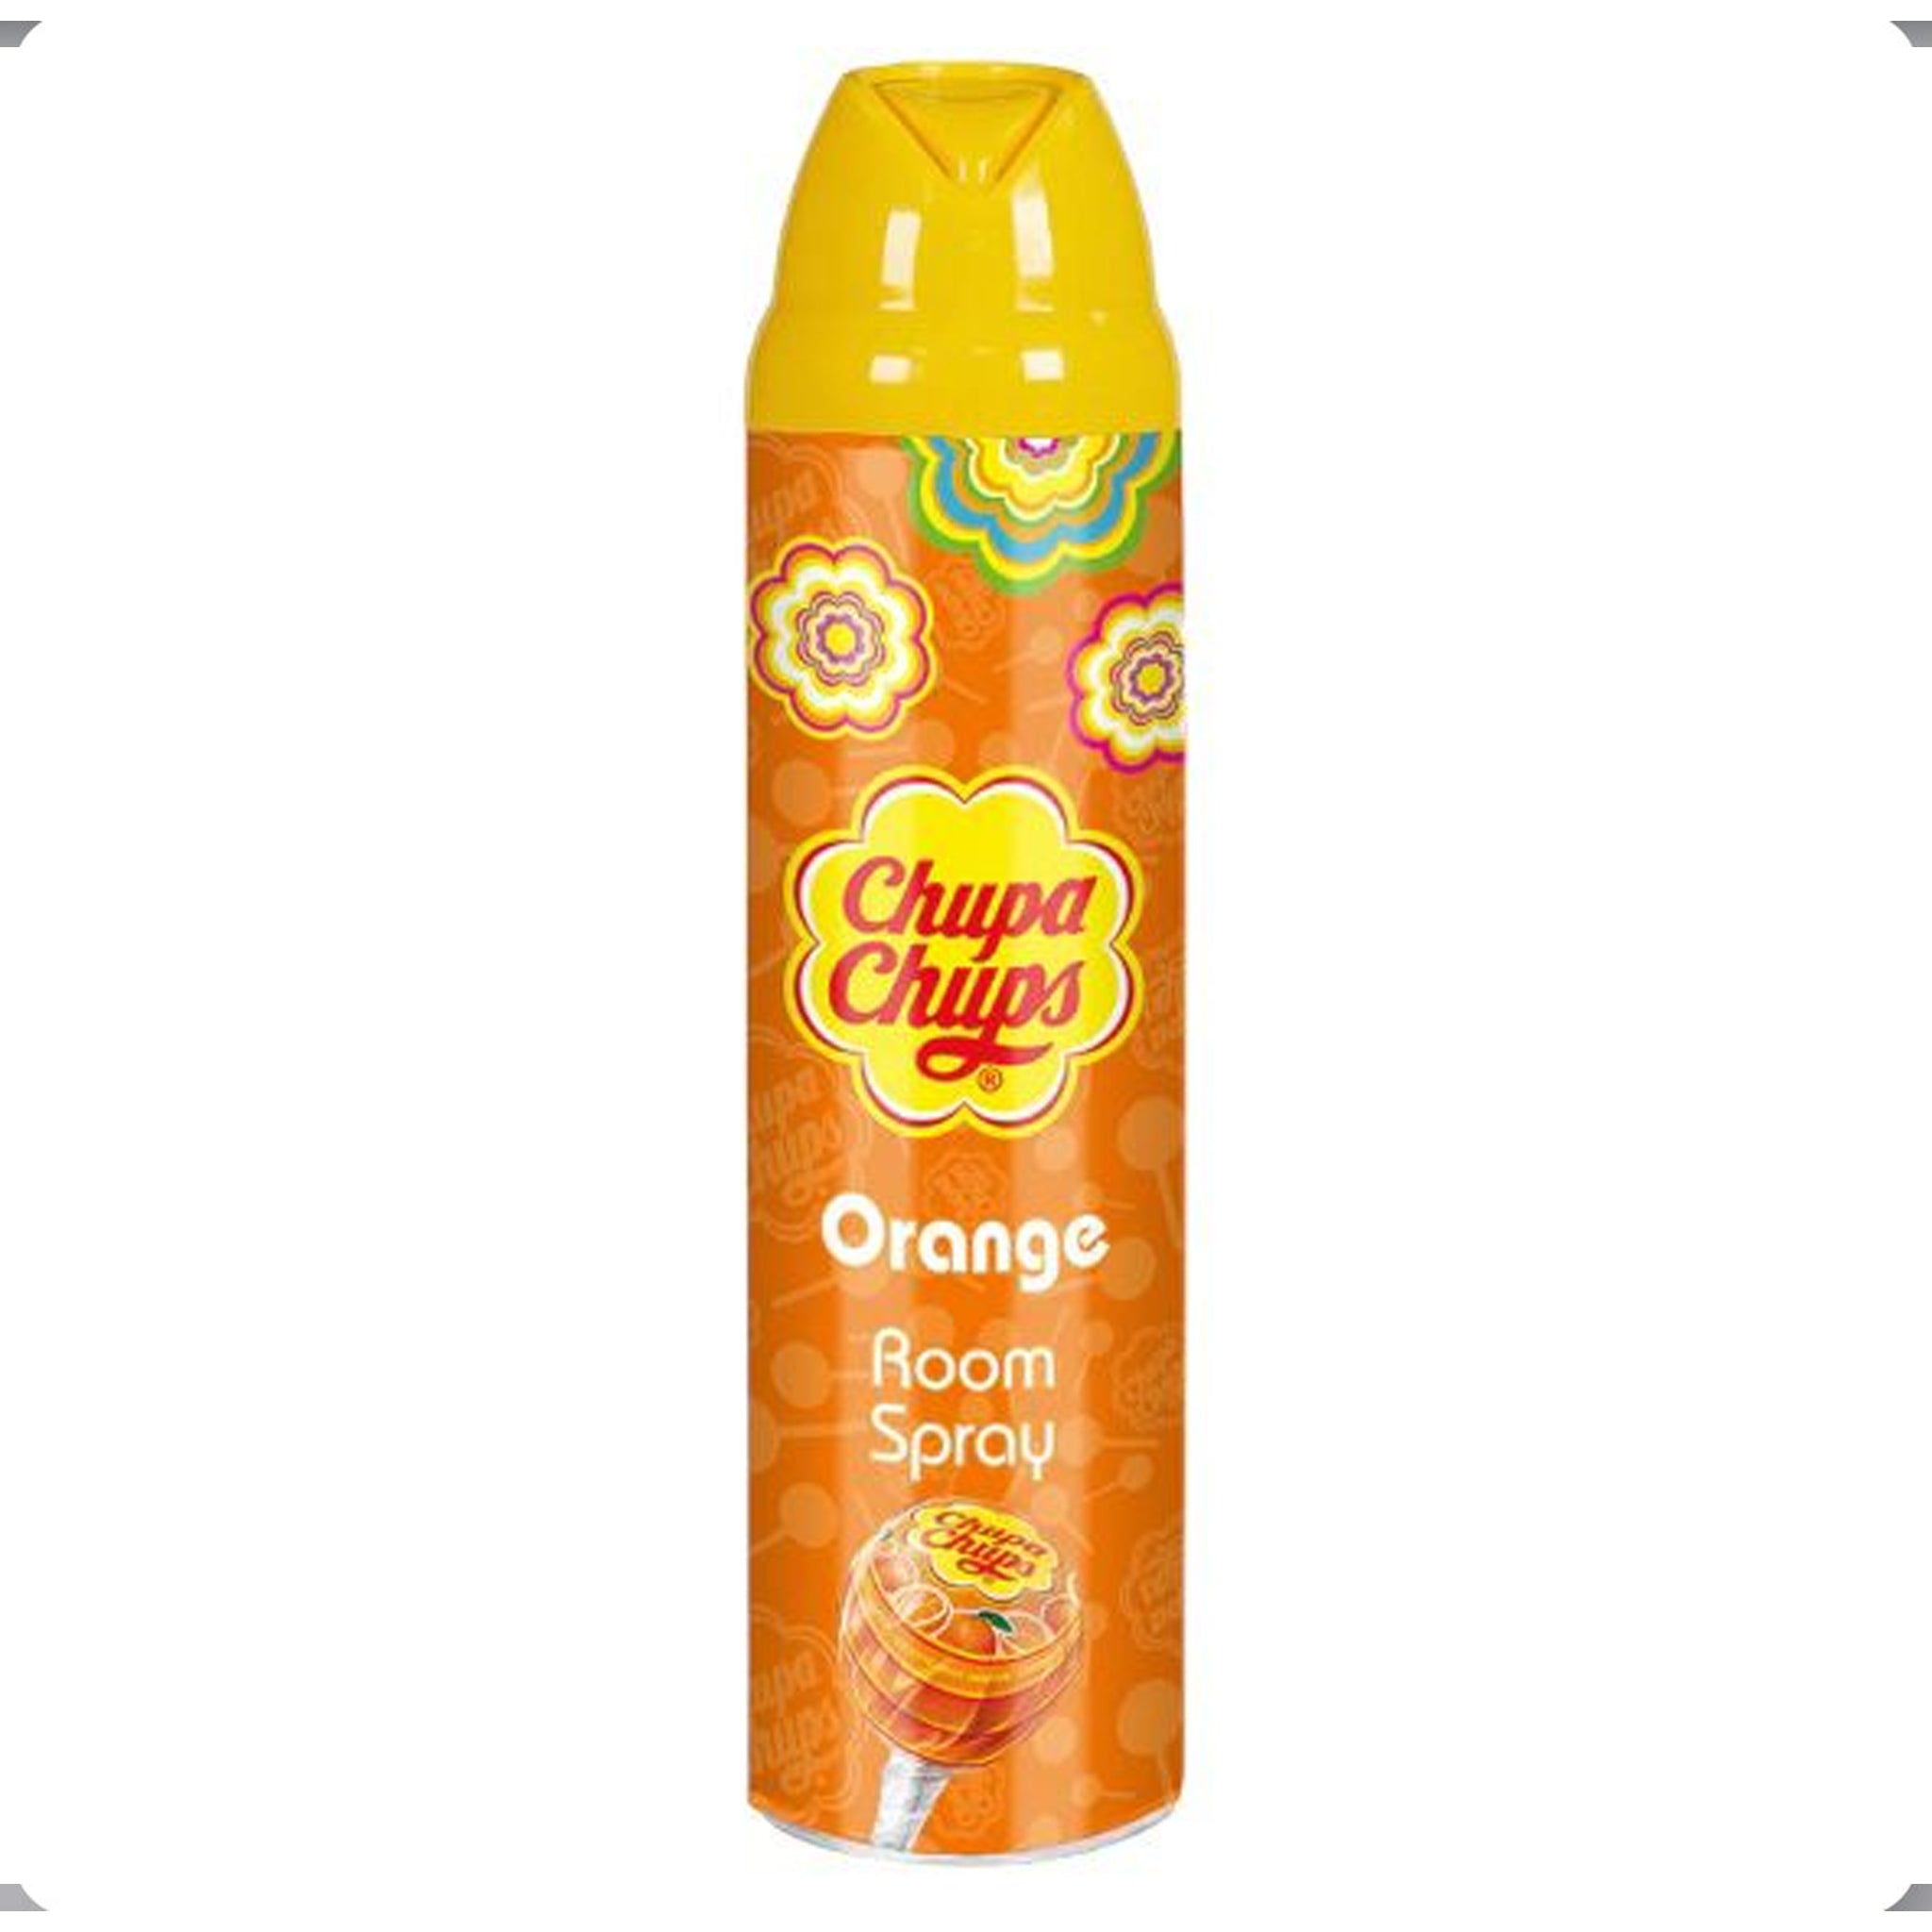 Chupa Chups Room Spray Orange ספריי בישום צ'ופה בריח תפוז